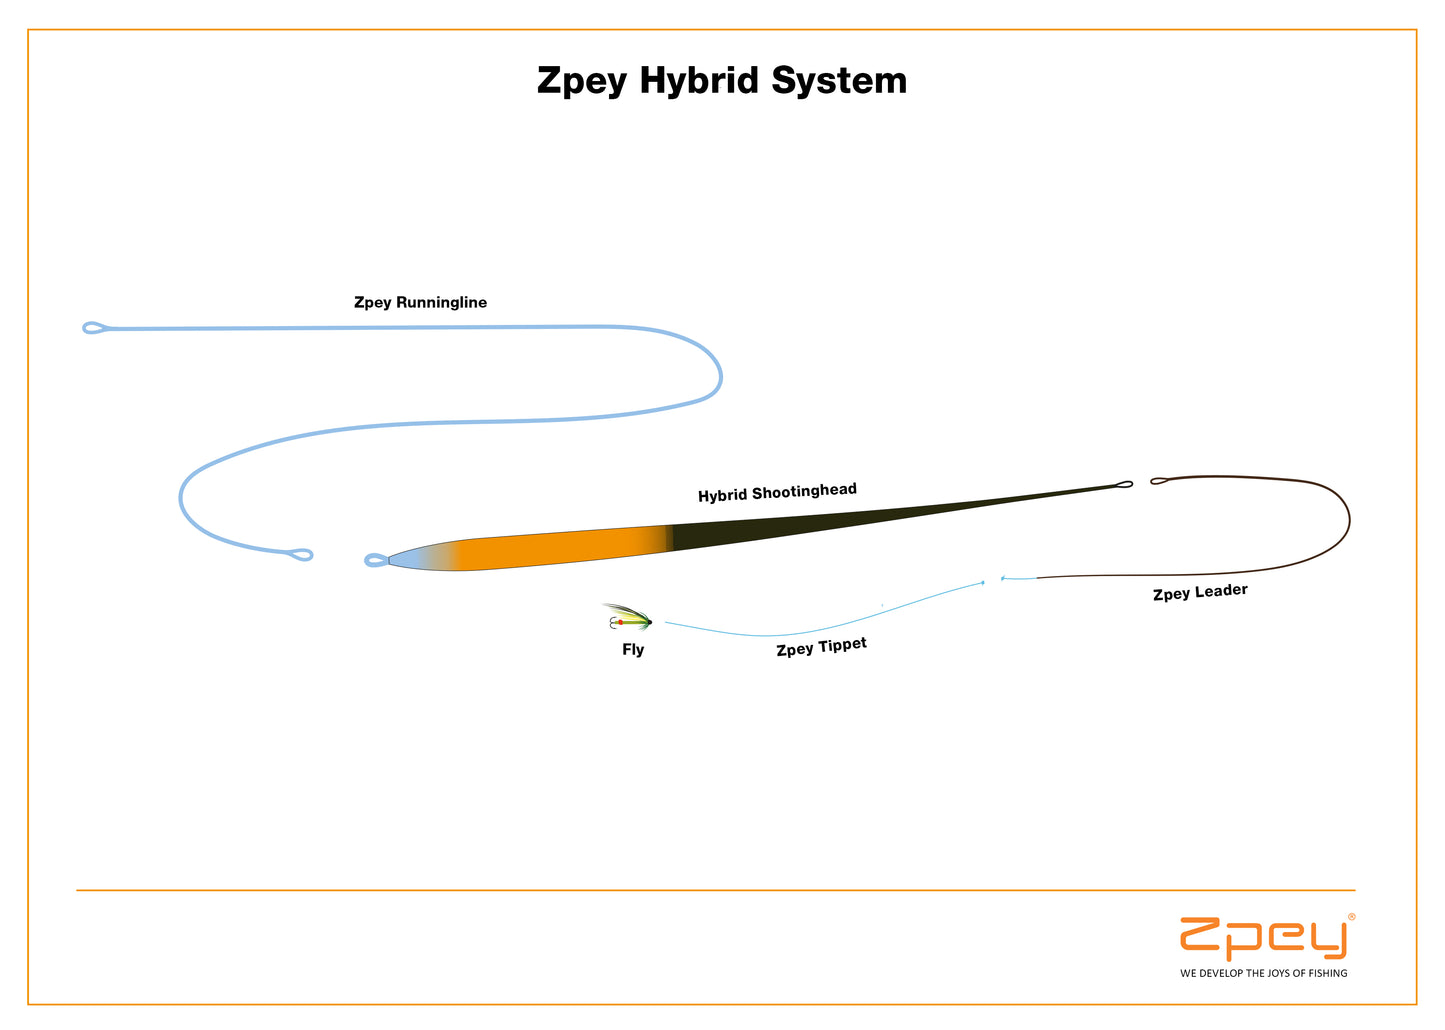 Zpey Hybrid Shootinghead, Float/Sink5/Sink6